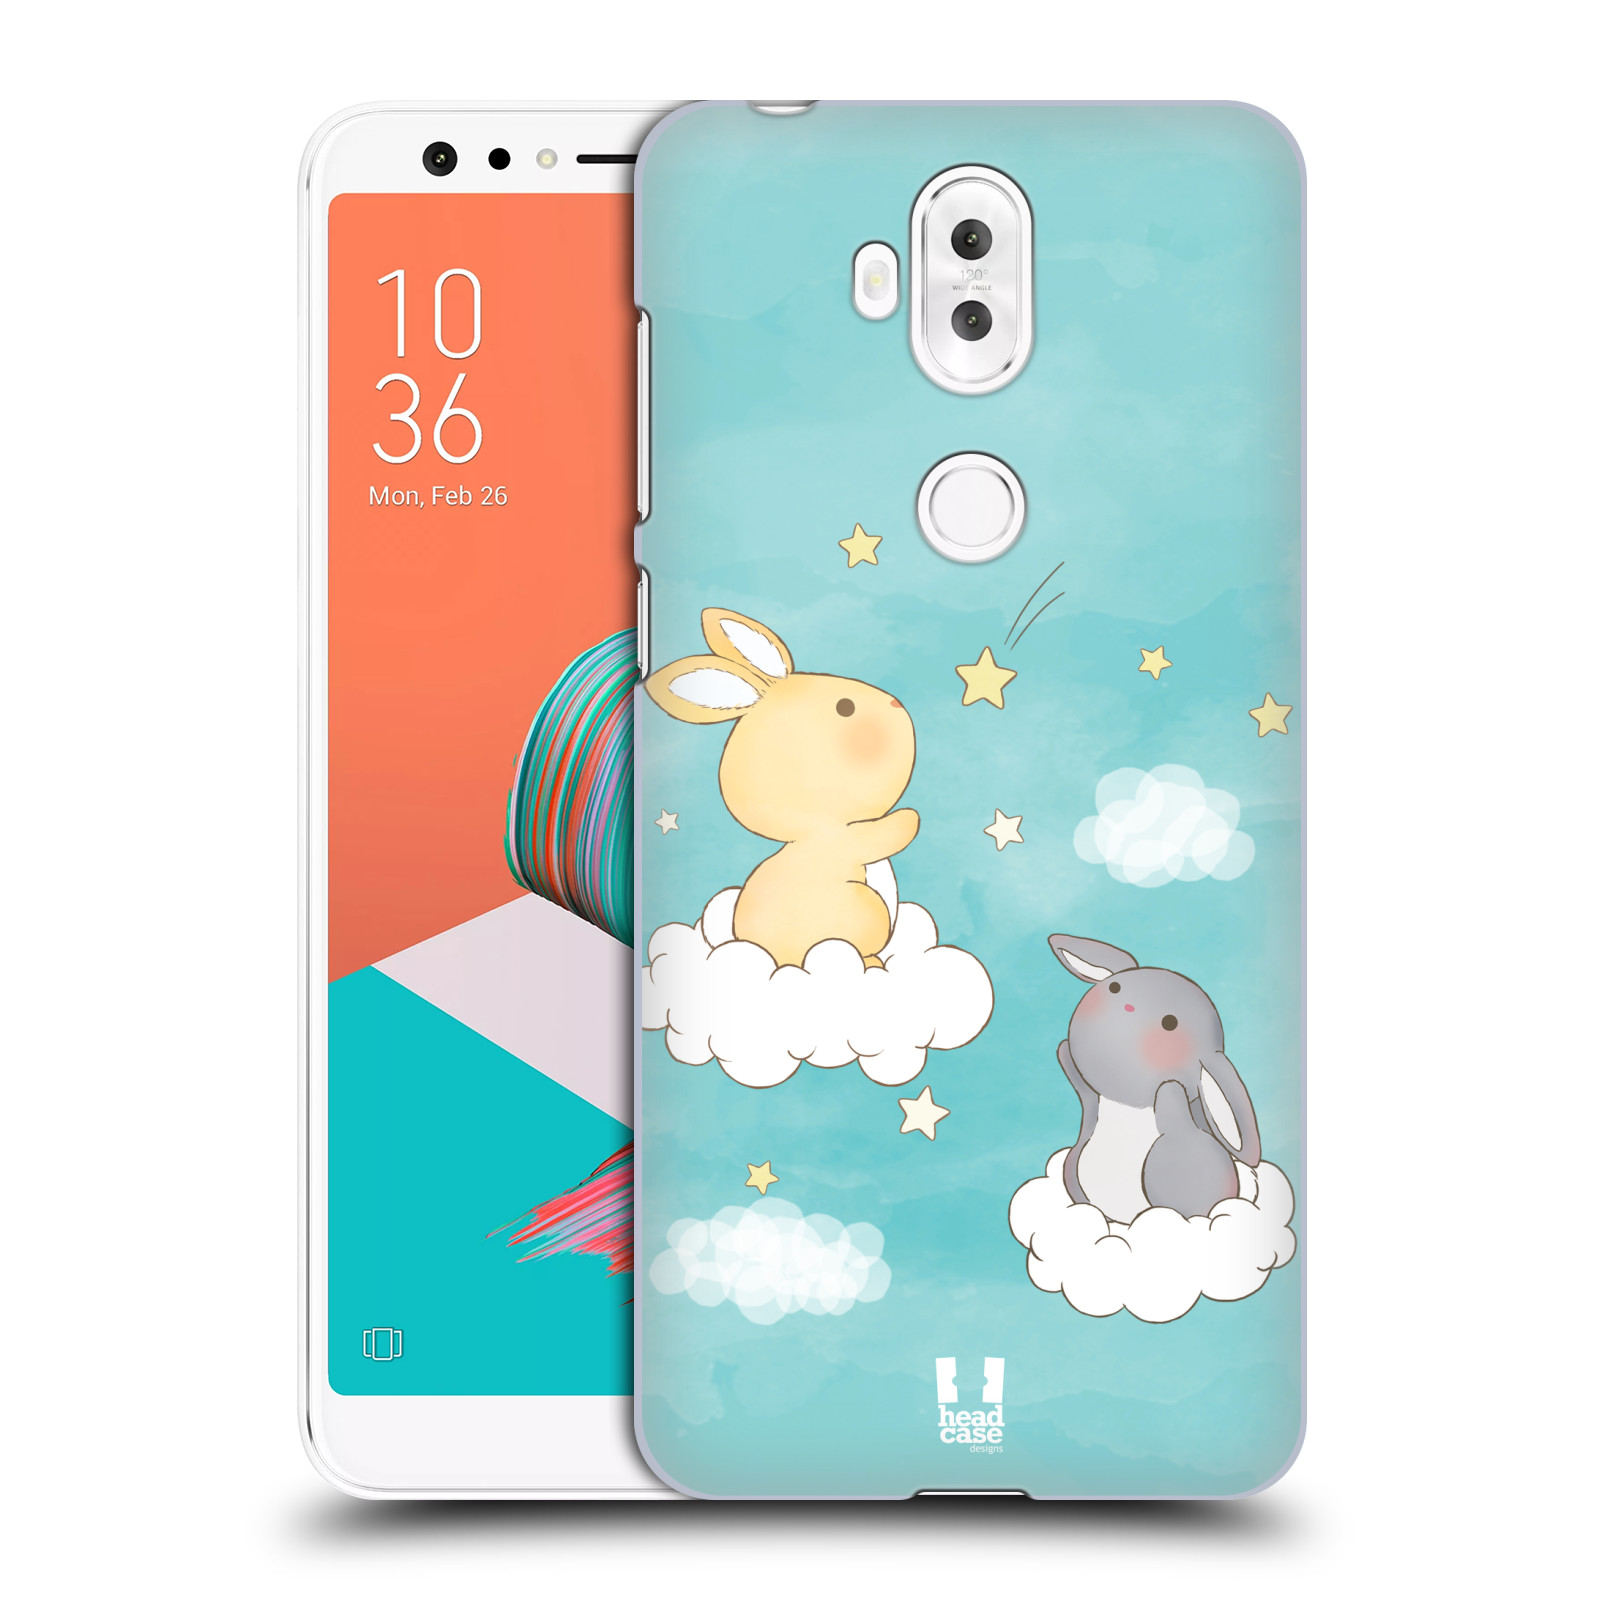 HEAD CASE plastový obal na mobil Asus Zenfone 5 LITE ZC600KL vzor králíček a hvězdy modrá